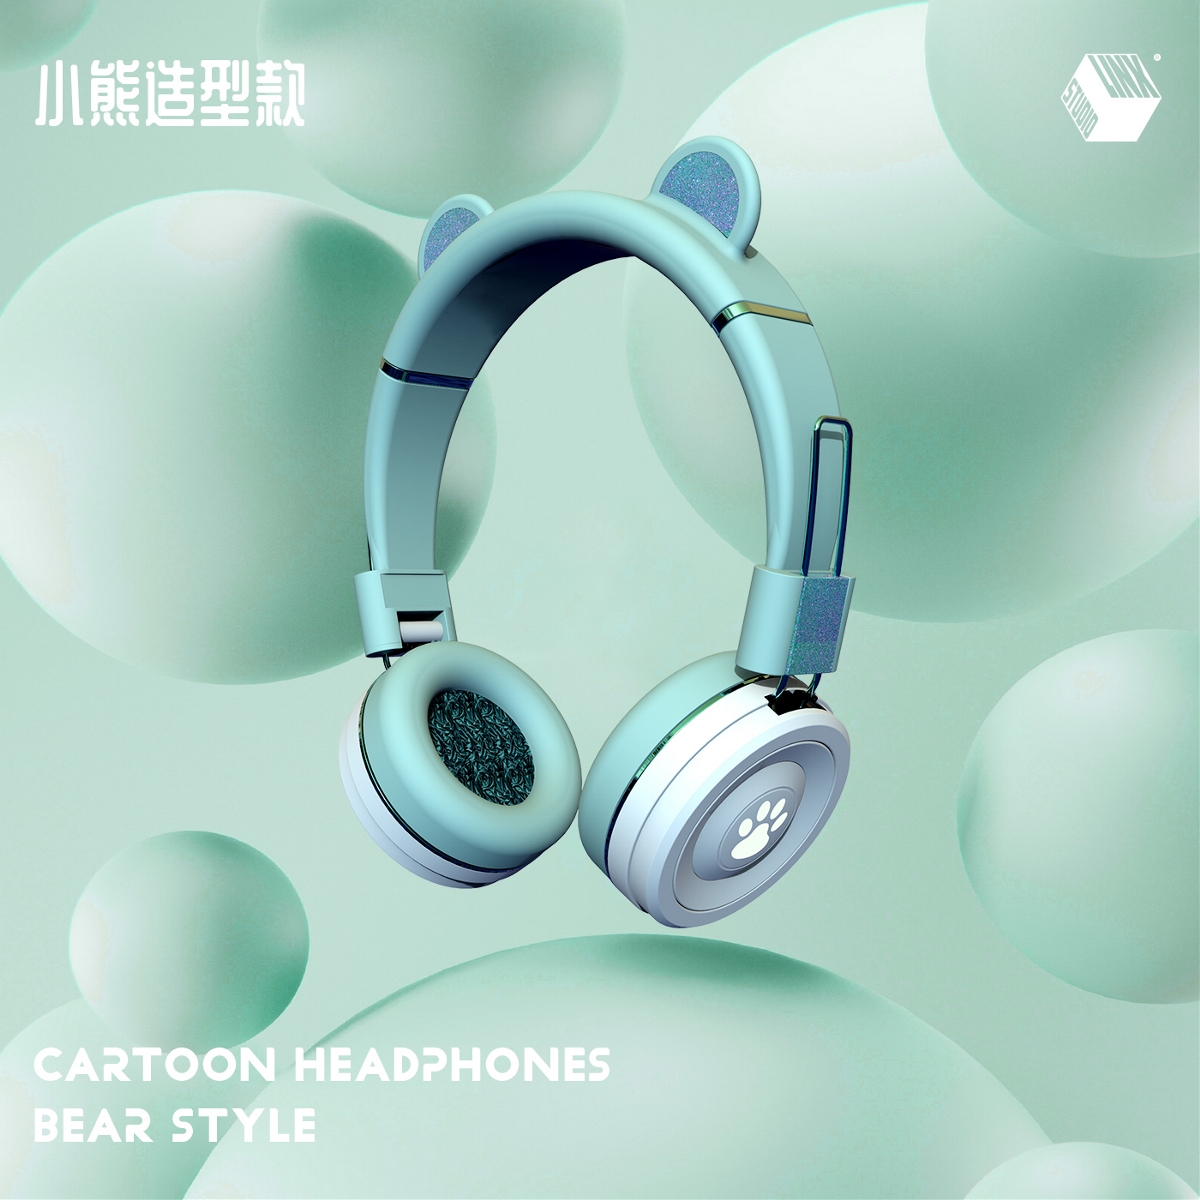 LINX 儿童耳机-产品设计